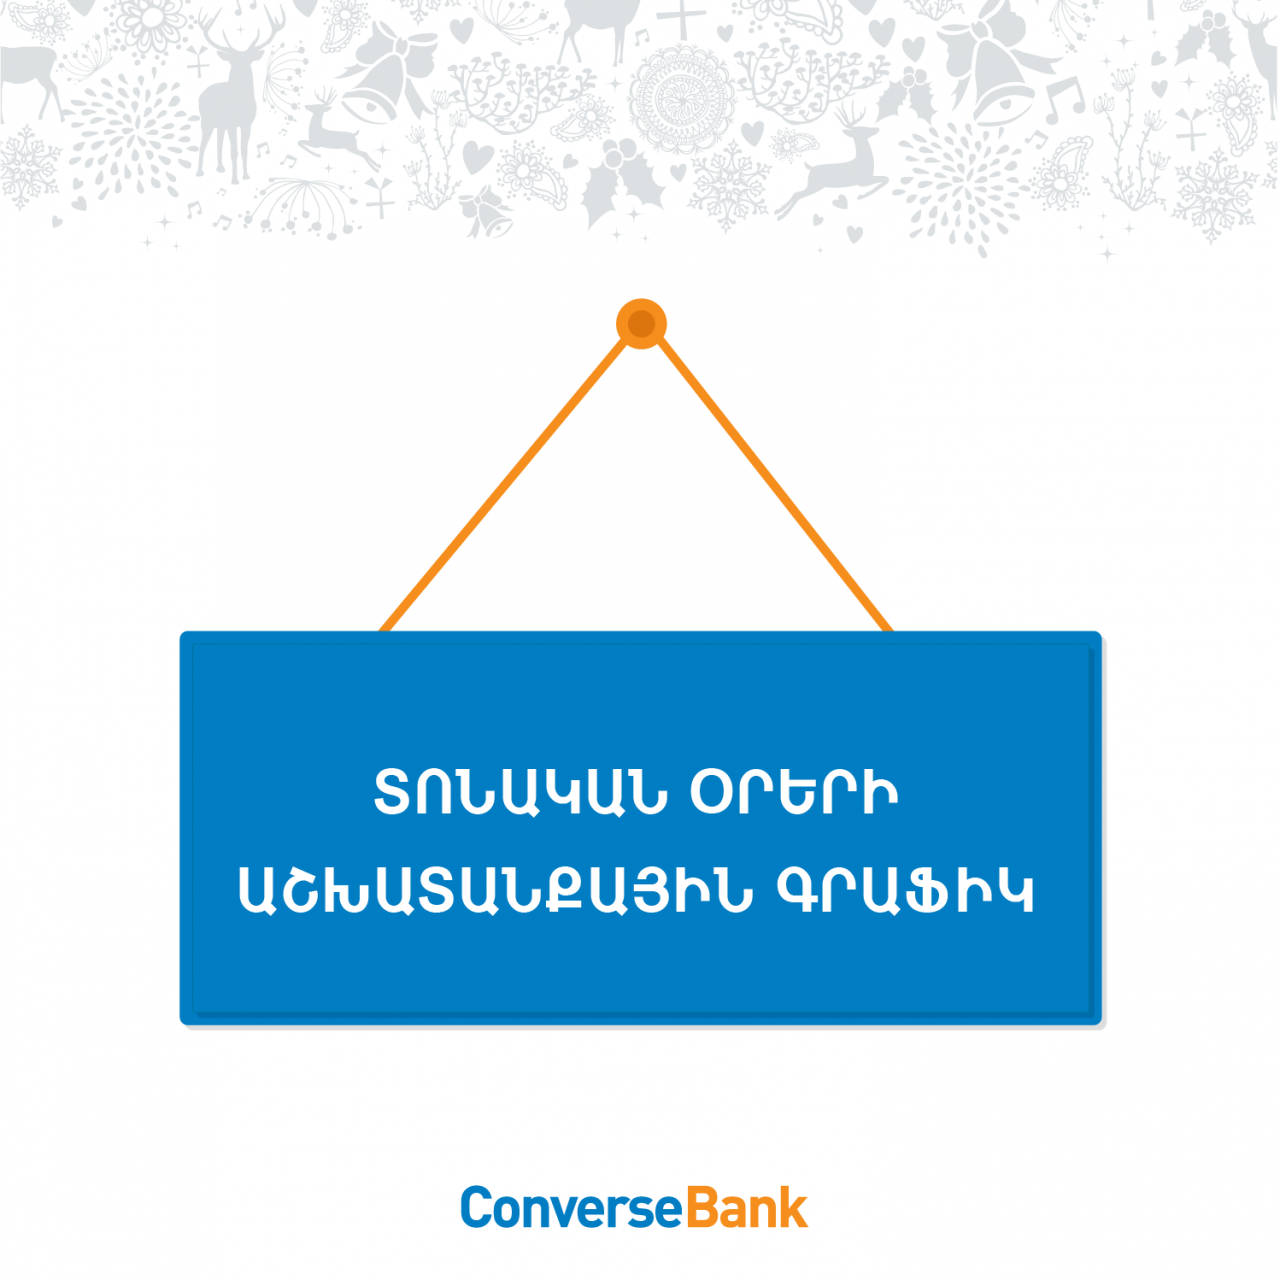 Կոնվերս բանկի մասնաճյուղերն աշխատելու են հունվարի 3-ին և 4-ին